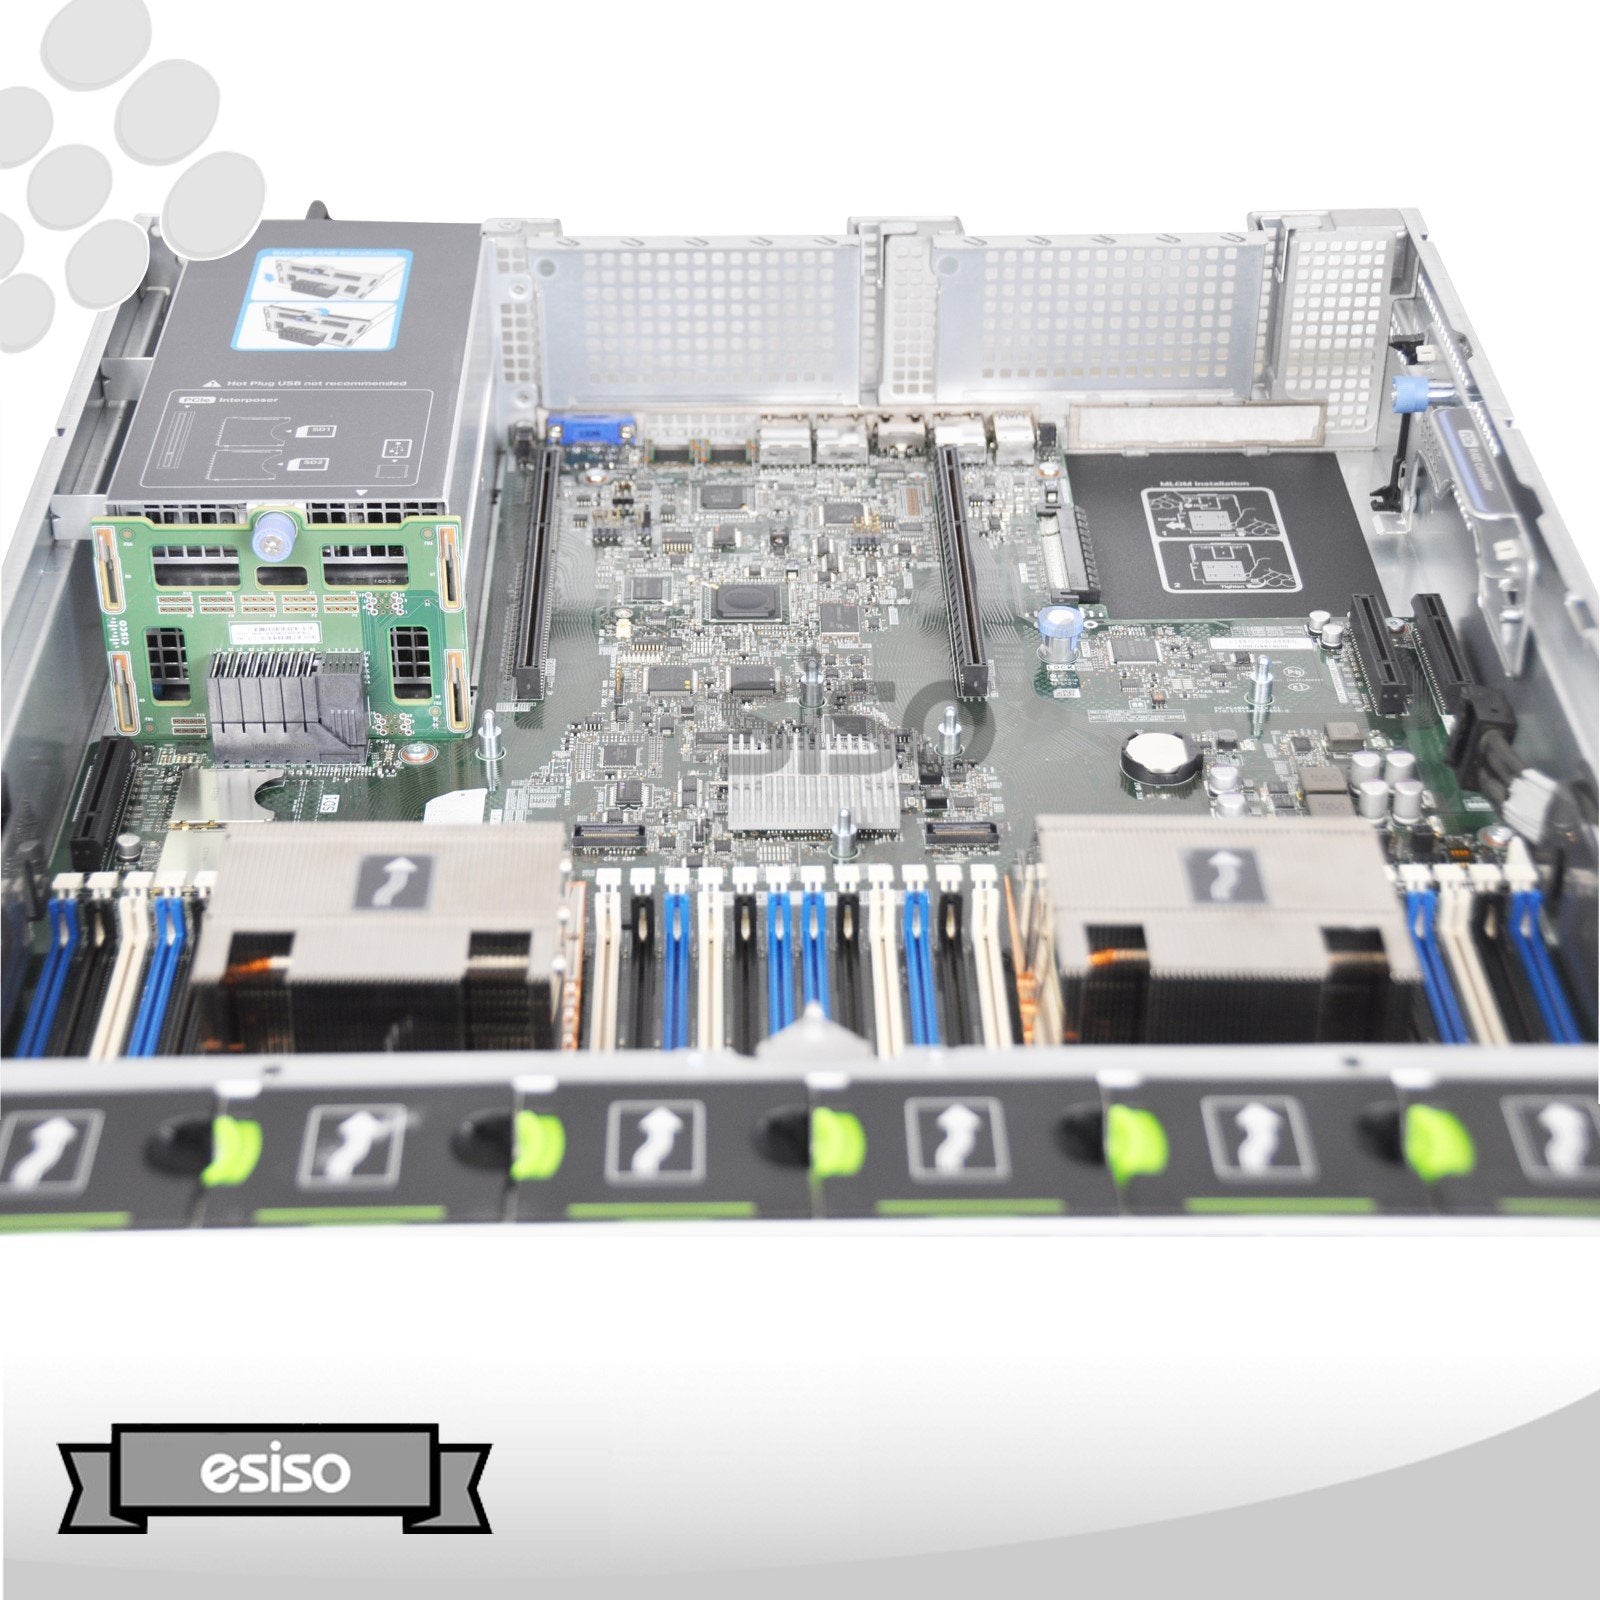 CISCO UCS C240 M4 8SFF SERVER 2x 6 CORE E5-2620V3 2.4GHz 16GB RAM 8xTRAY NO RAIL